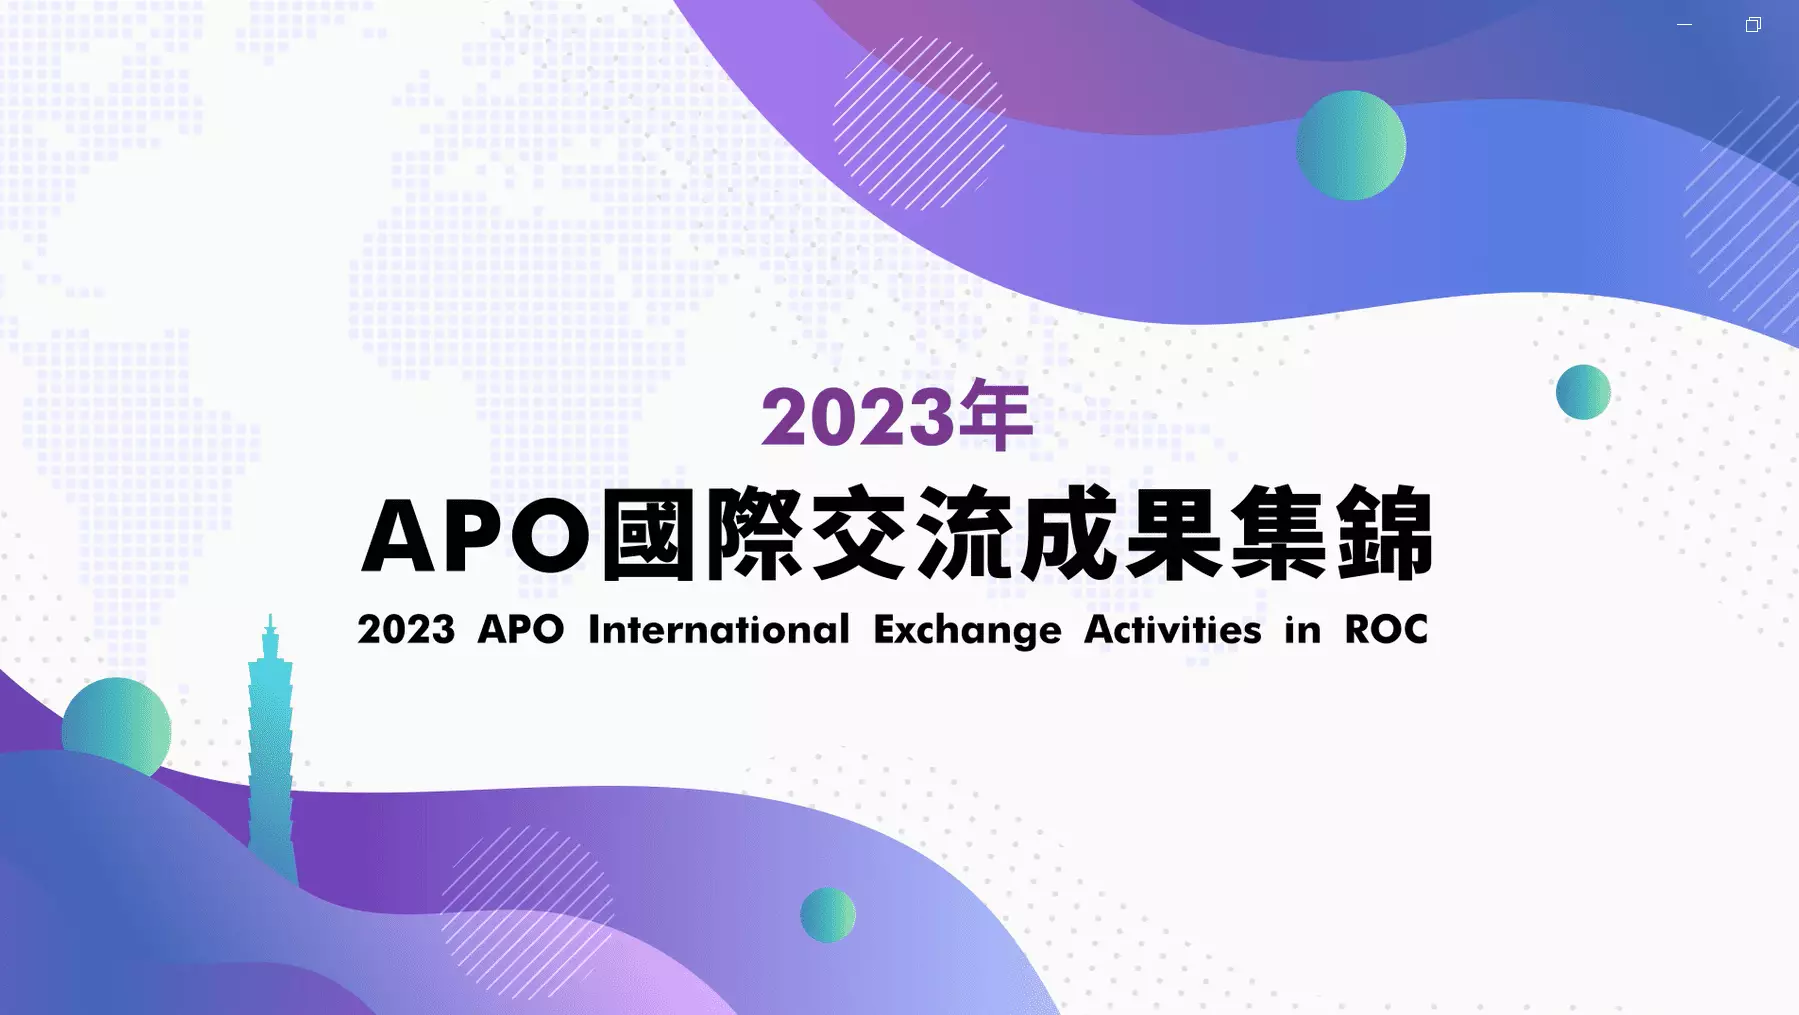 APO 2023 International Exchange Activities in ROC